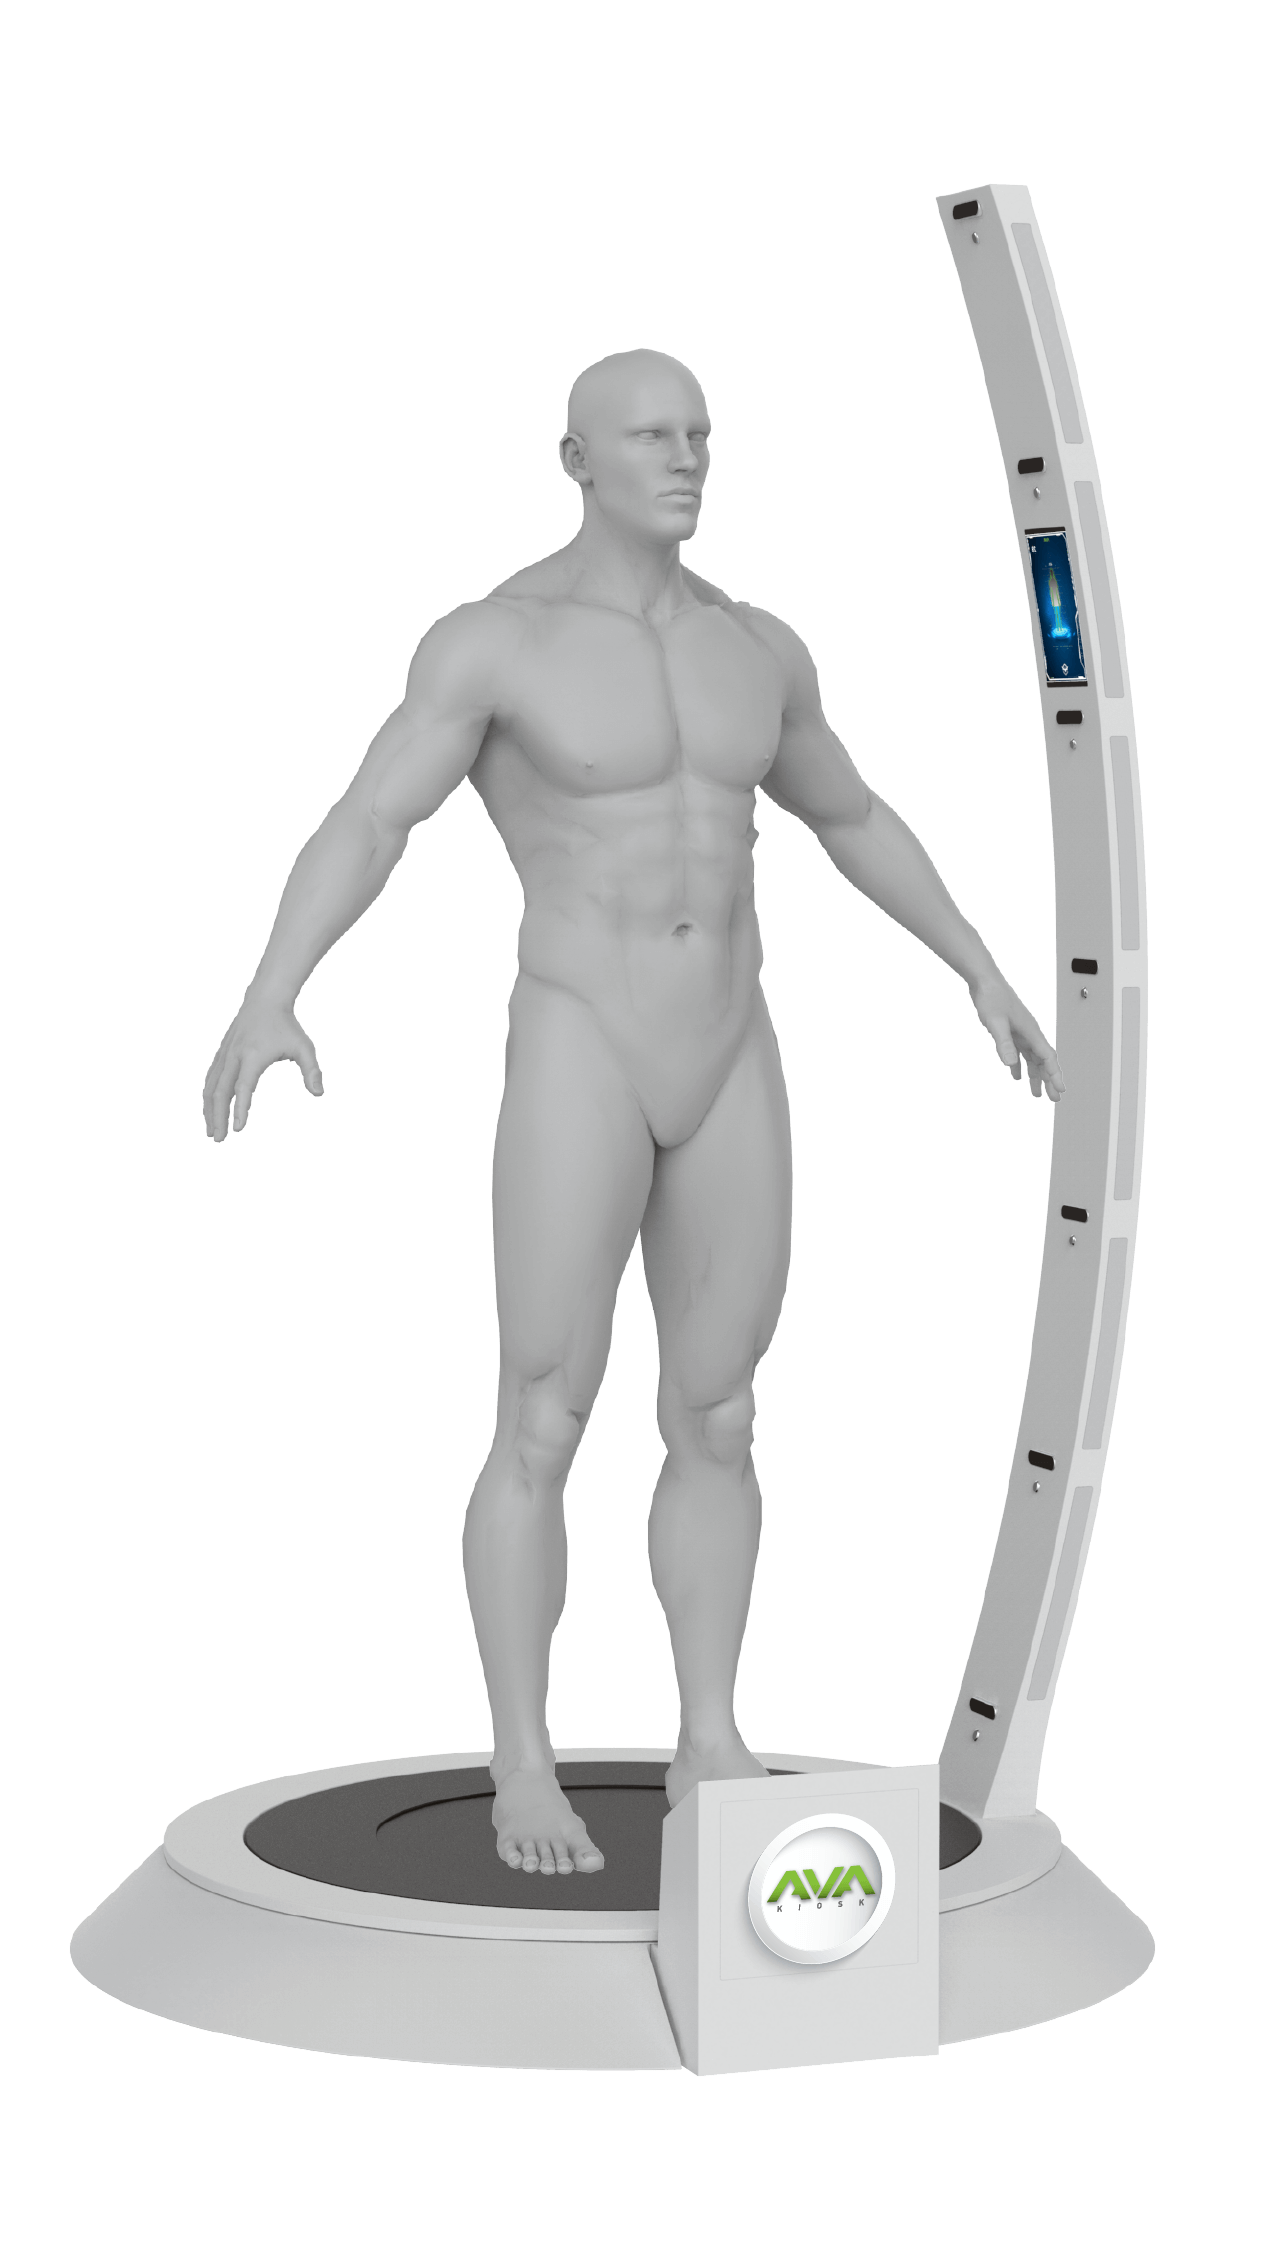 AVA-body-scanner